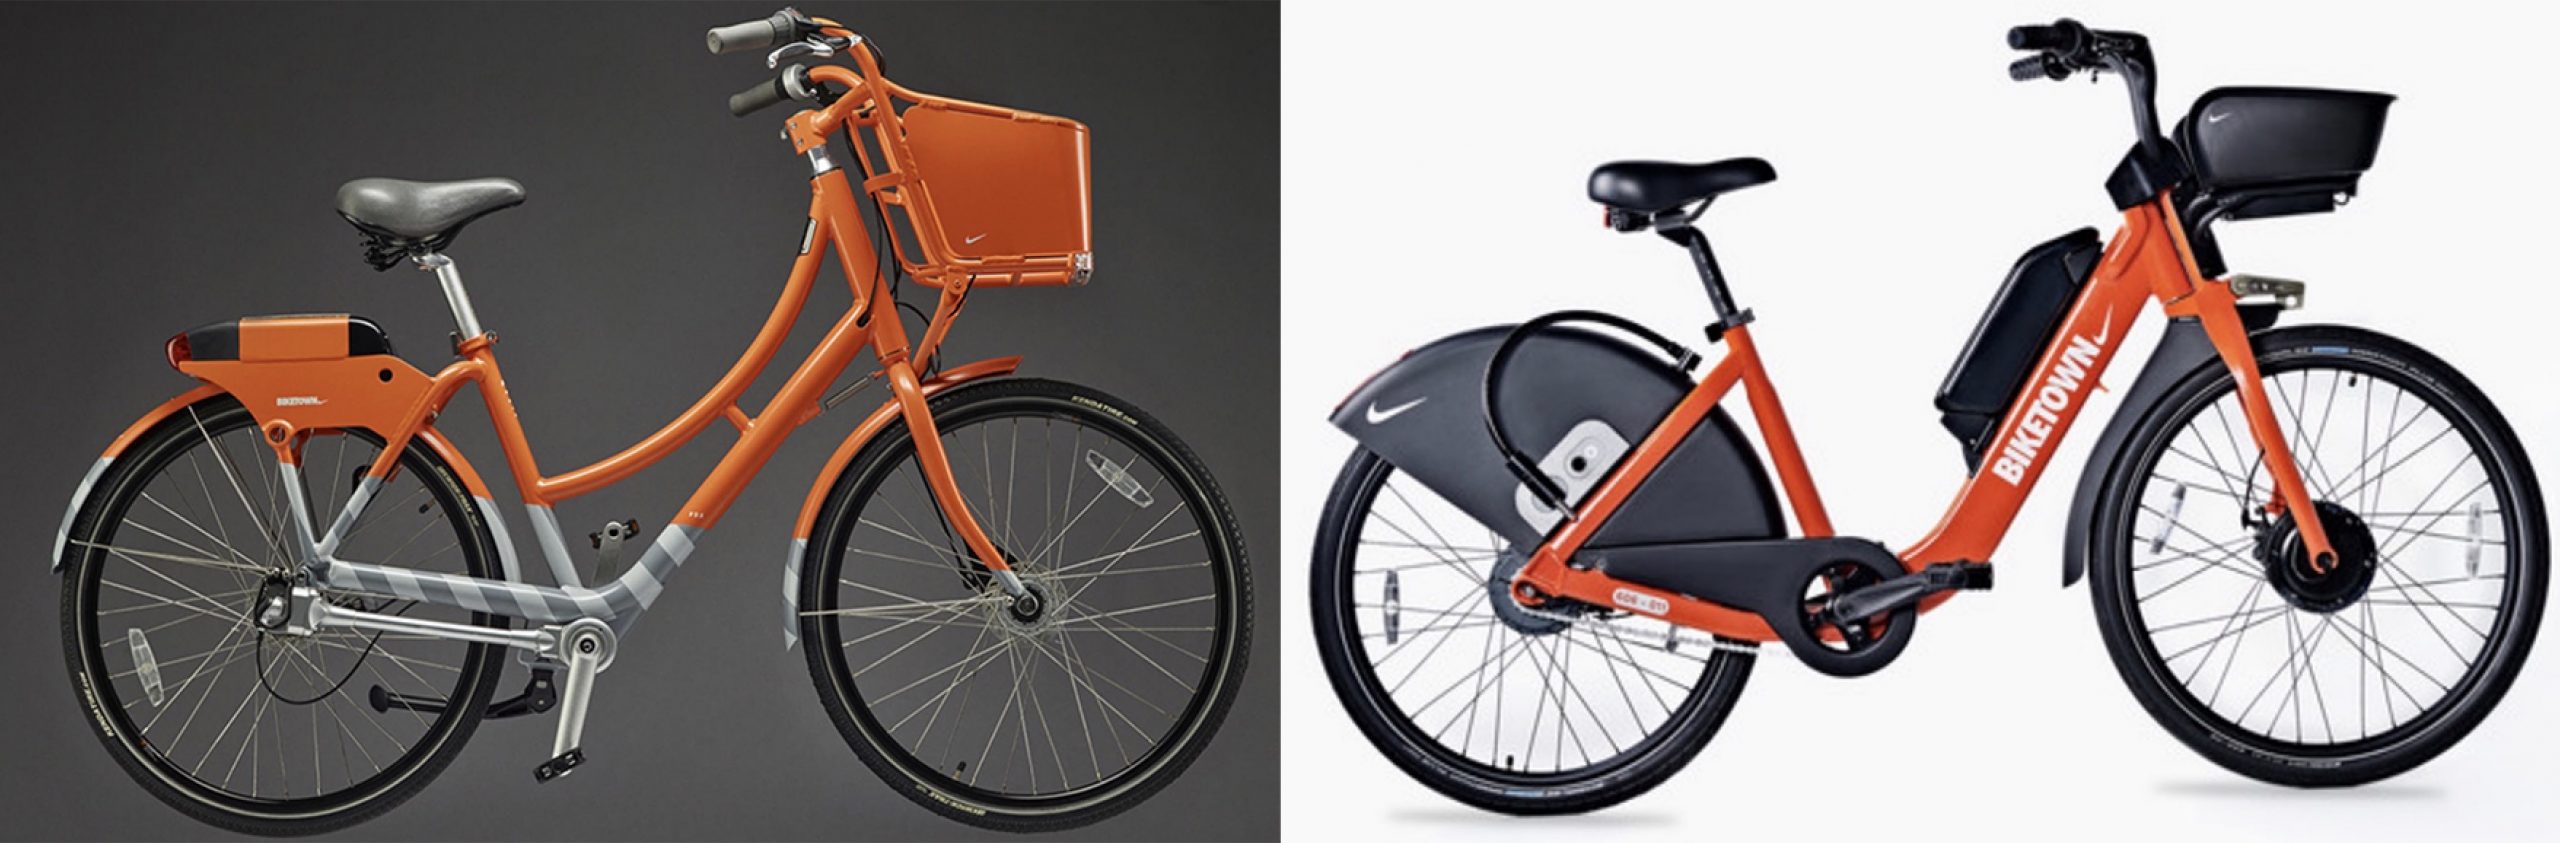 New Biketown e-bikes will be nice, but 